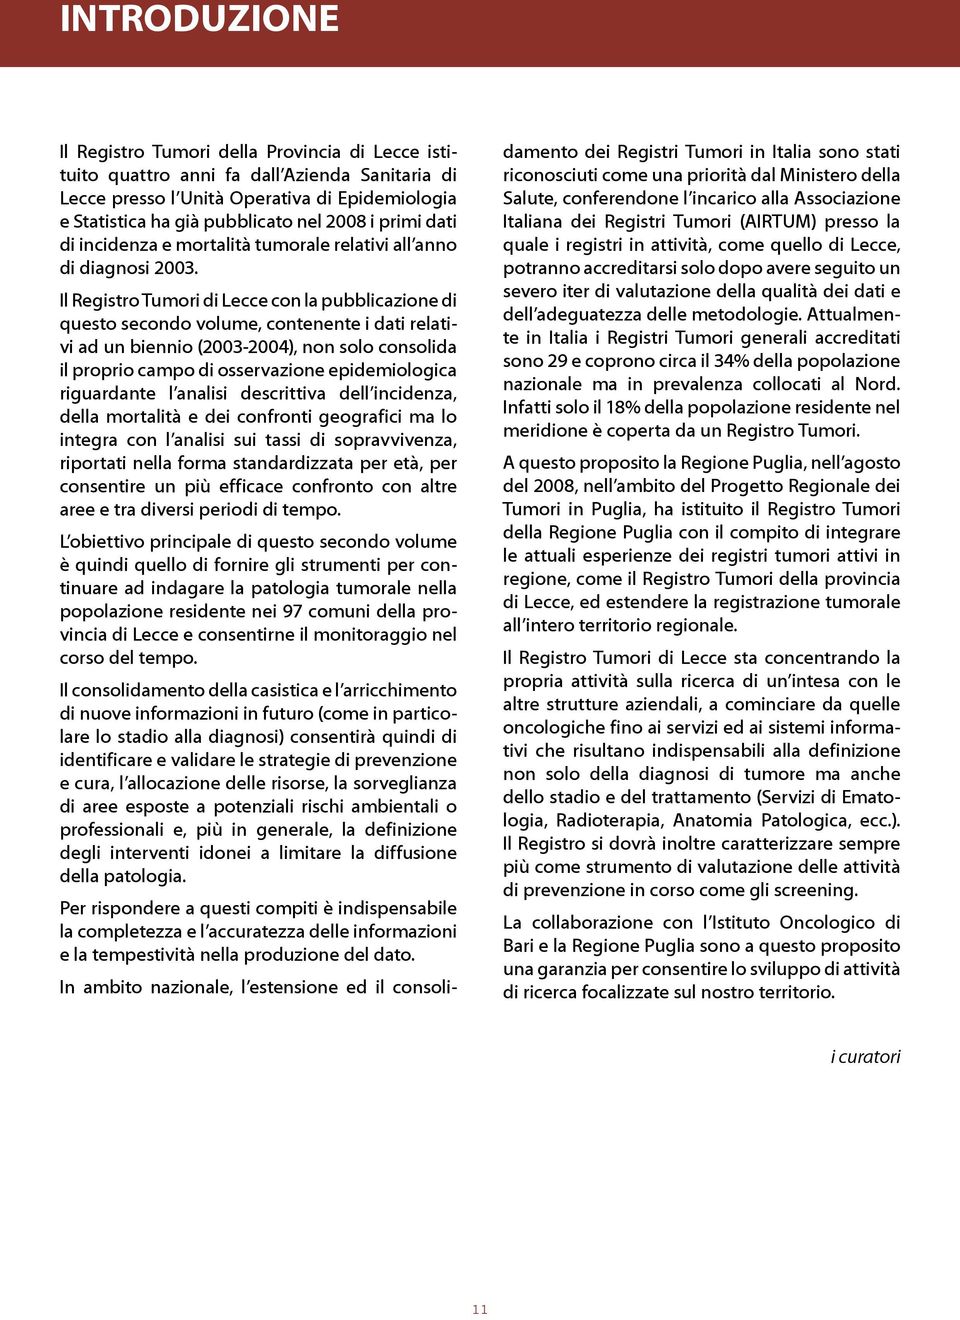 Il Registro Tumori di Lecce con la pubblicazione di questo secondo volume, contenente i dati relativi ad un biennio (2003-2004), non solo consolida il proprio campo di osservazione epidemiologica